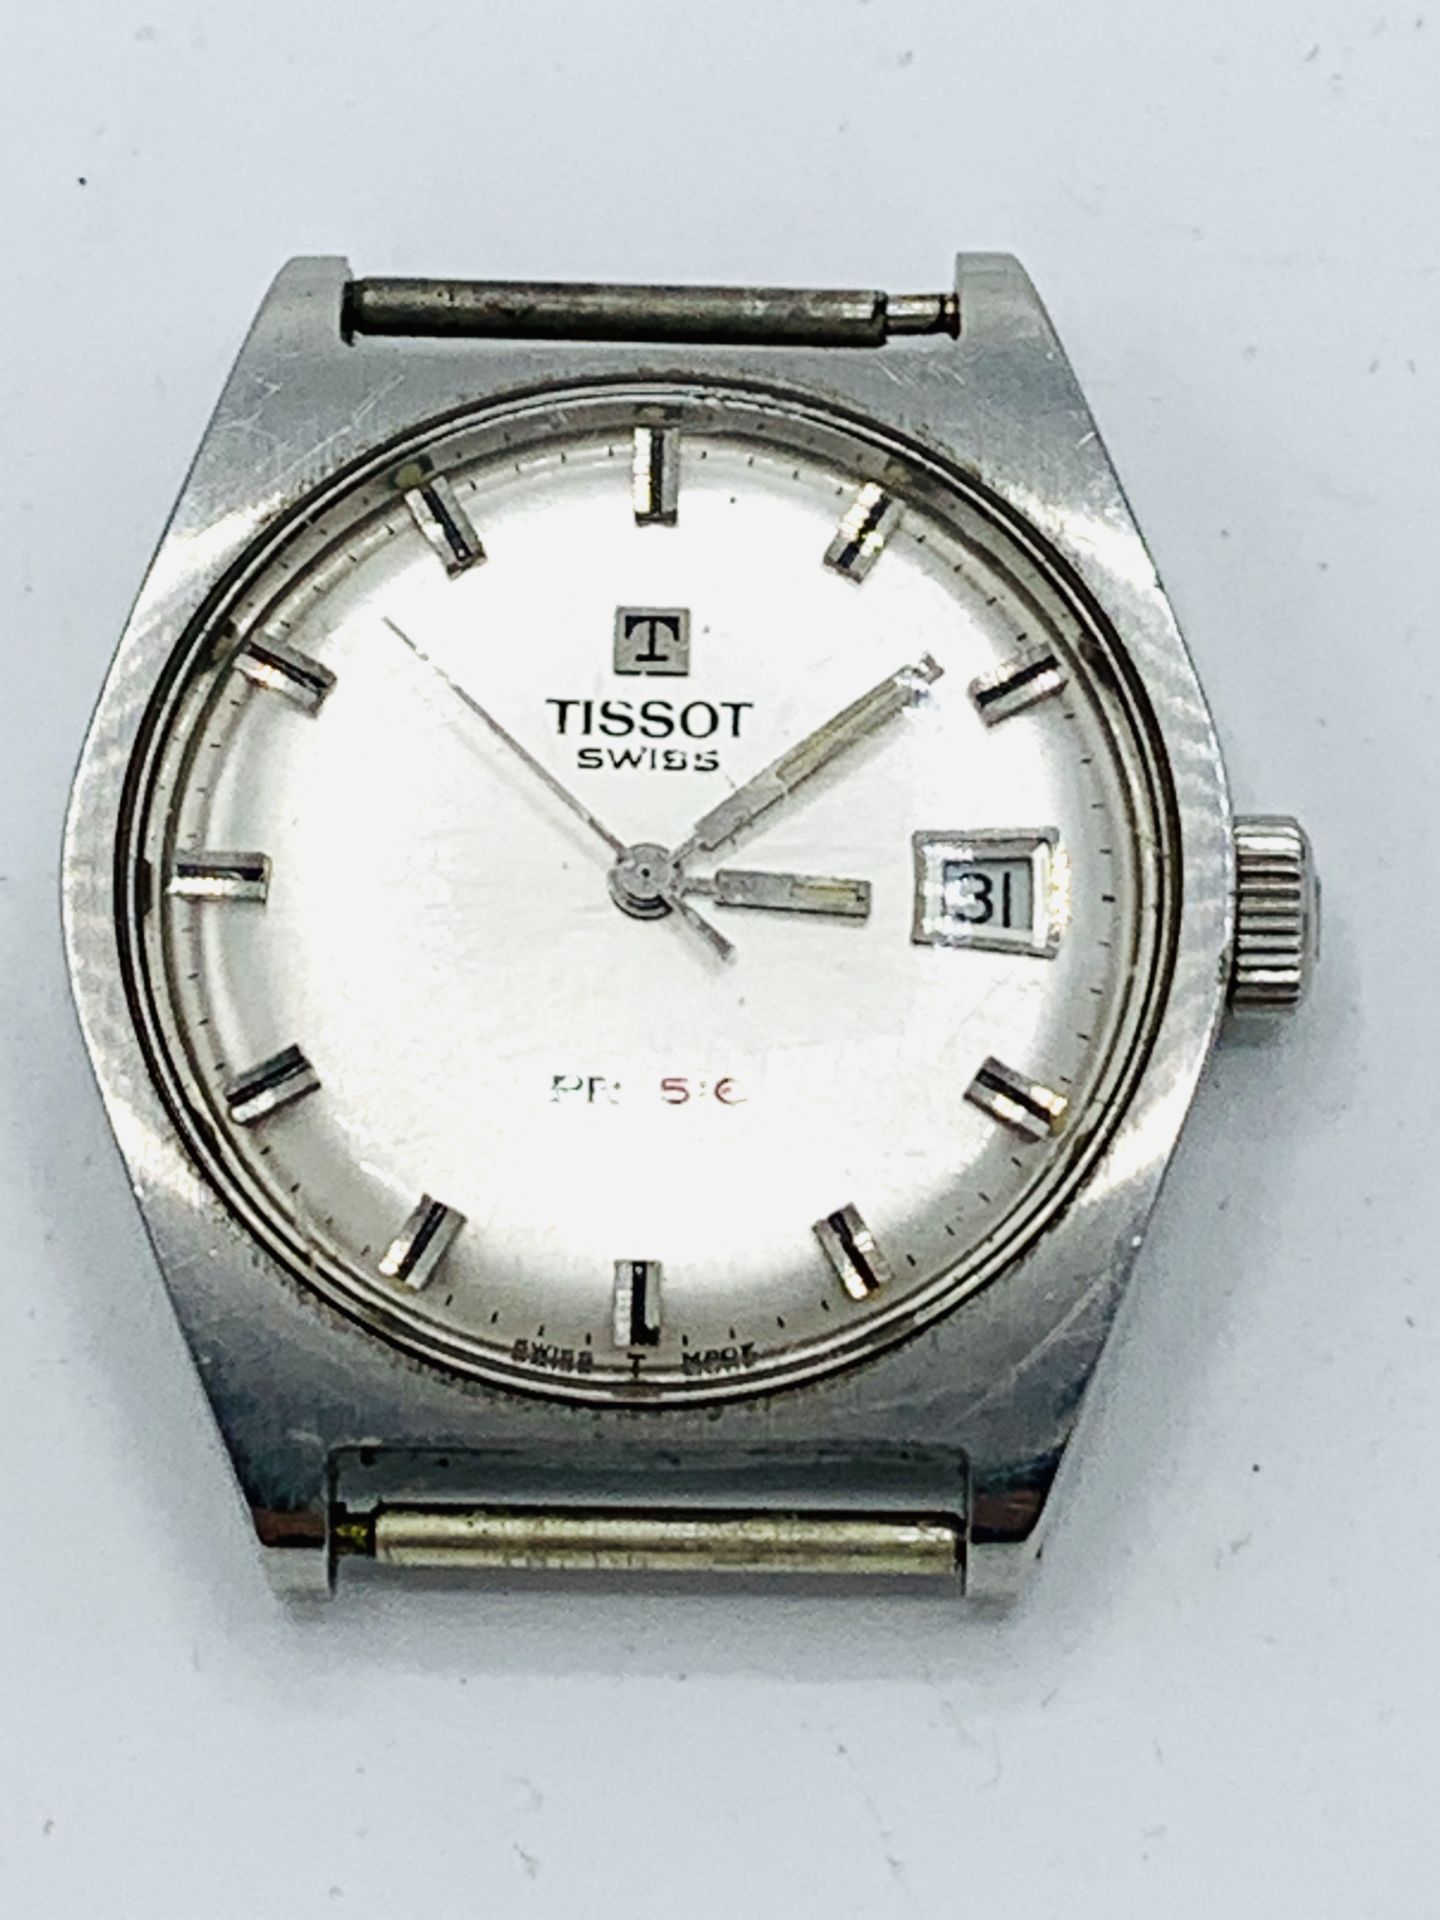 Tissot PR 516 gentleman's wrist watch, going - Image 3 of 3